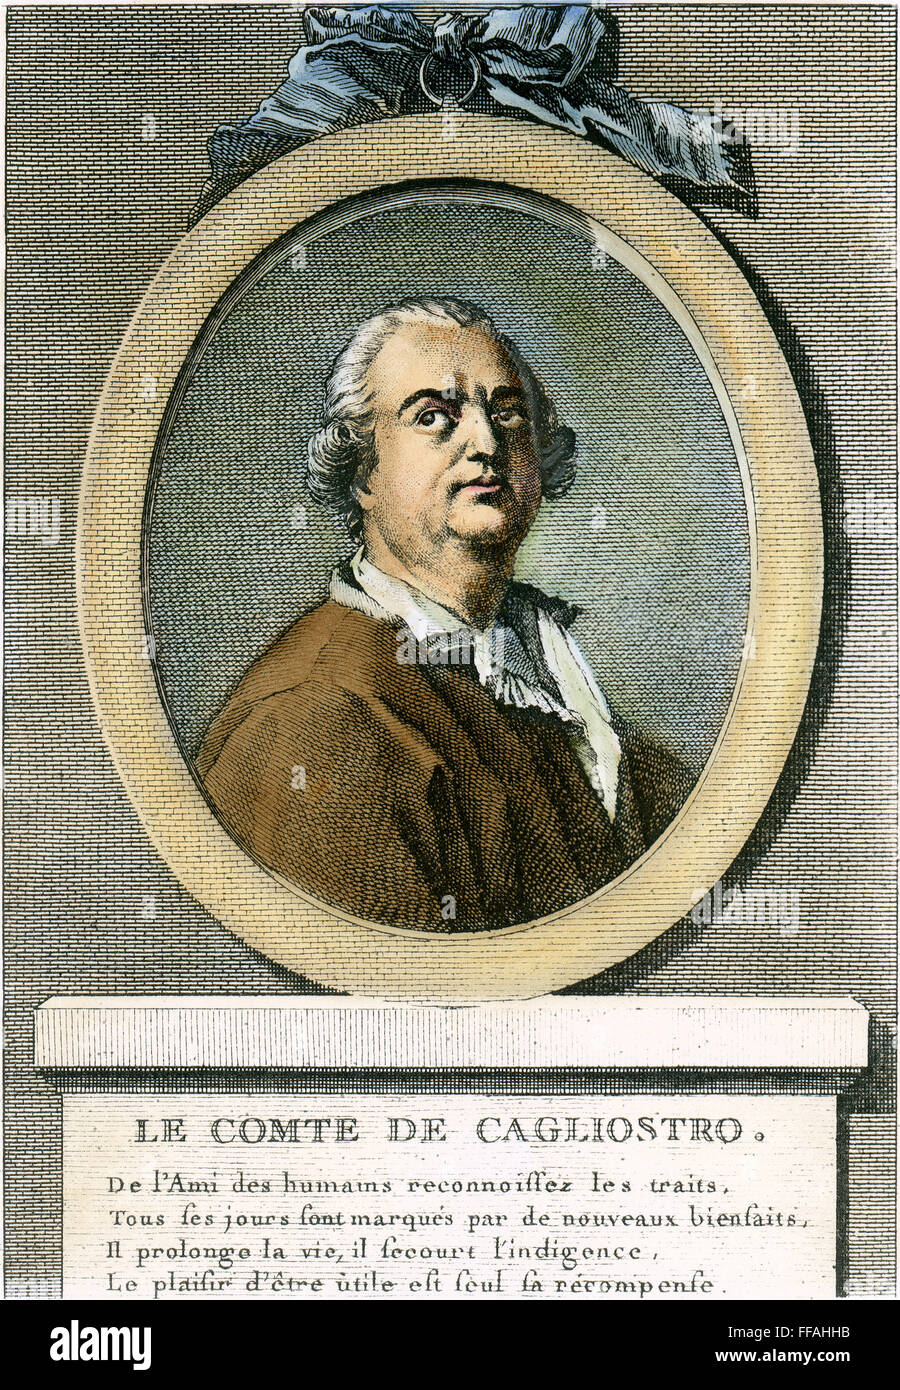 COUNT CAGLIOSTRO /n(1743-1795). Alessandro Conte di Cagliostro. Italian adventurer. Copper engraving, French, 18th century. Stock Photo